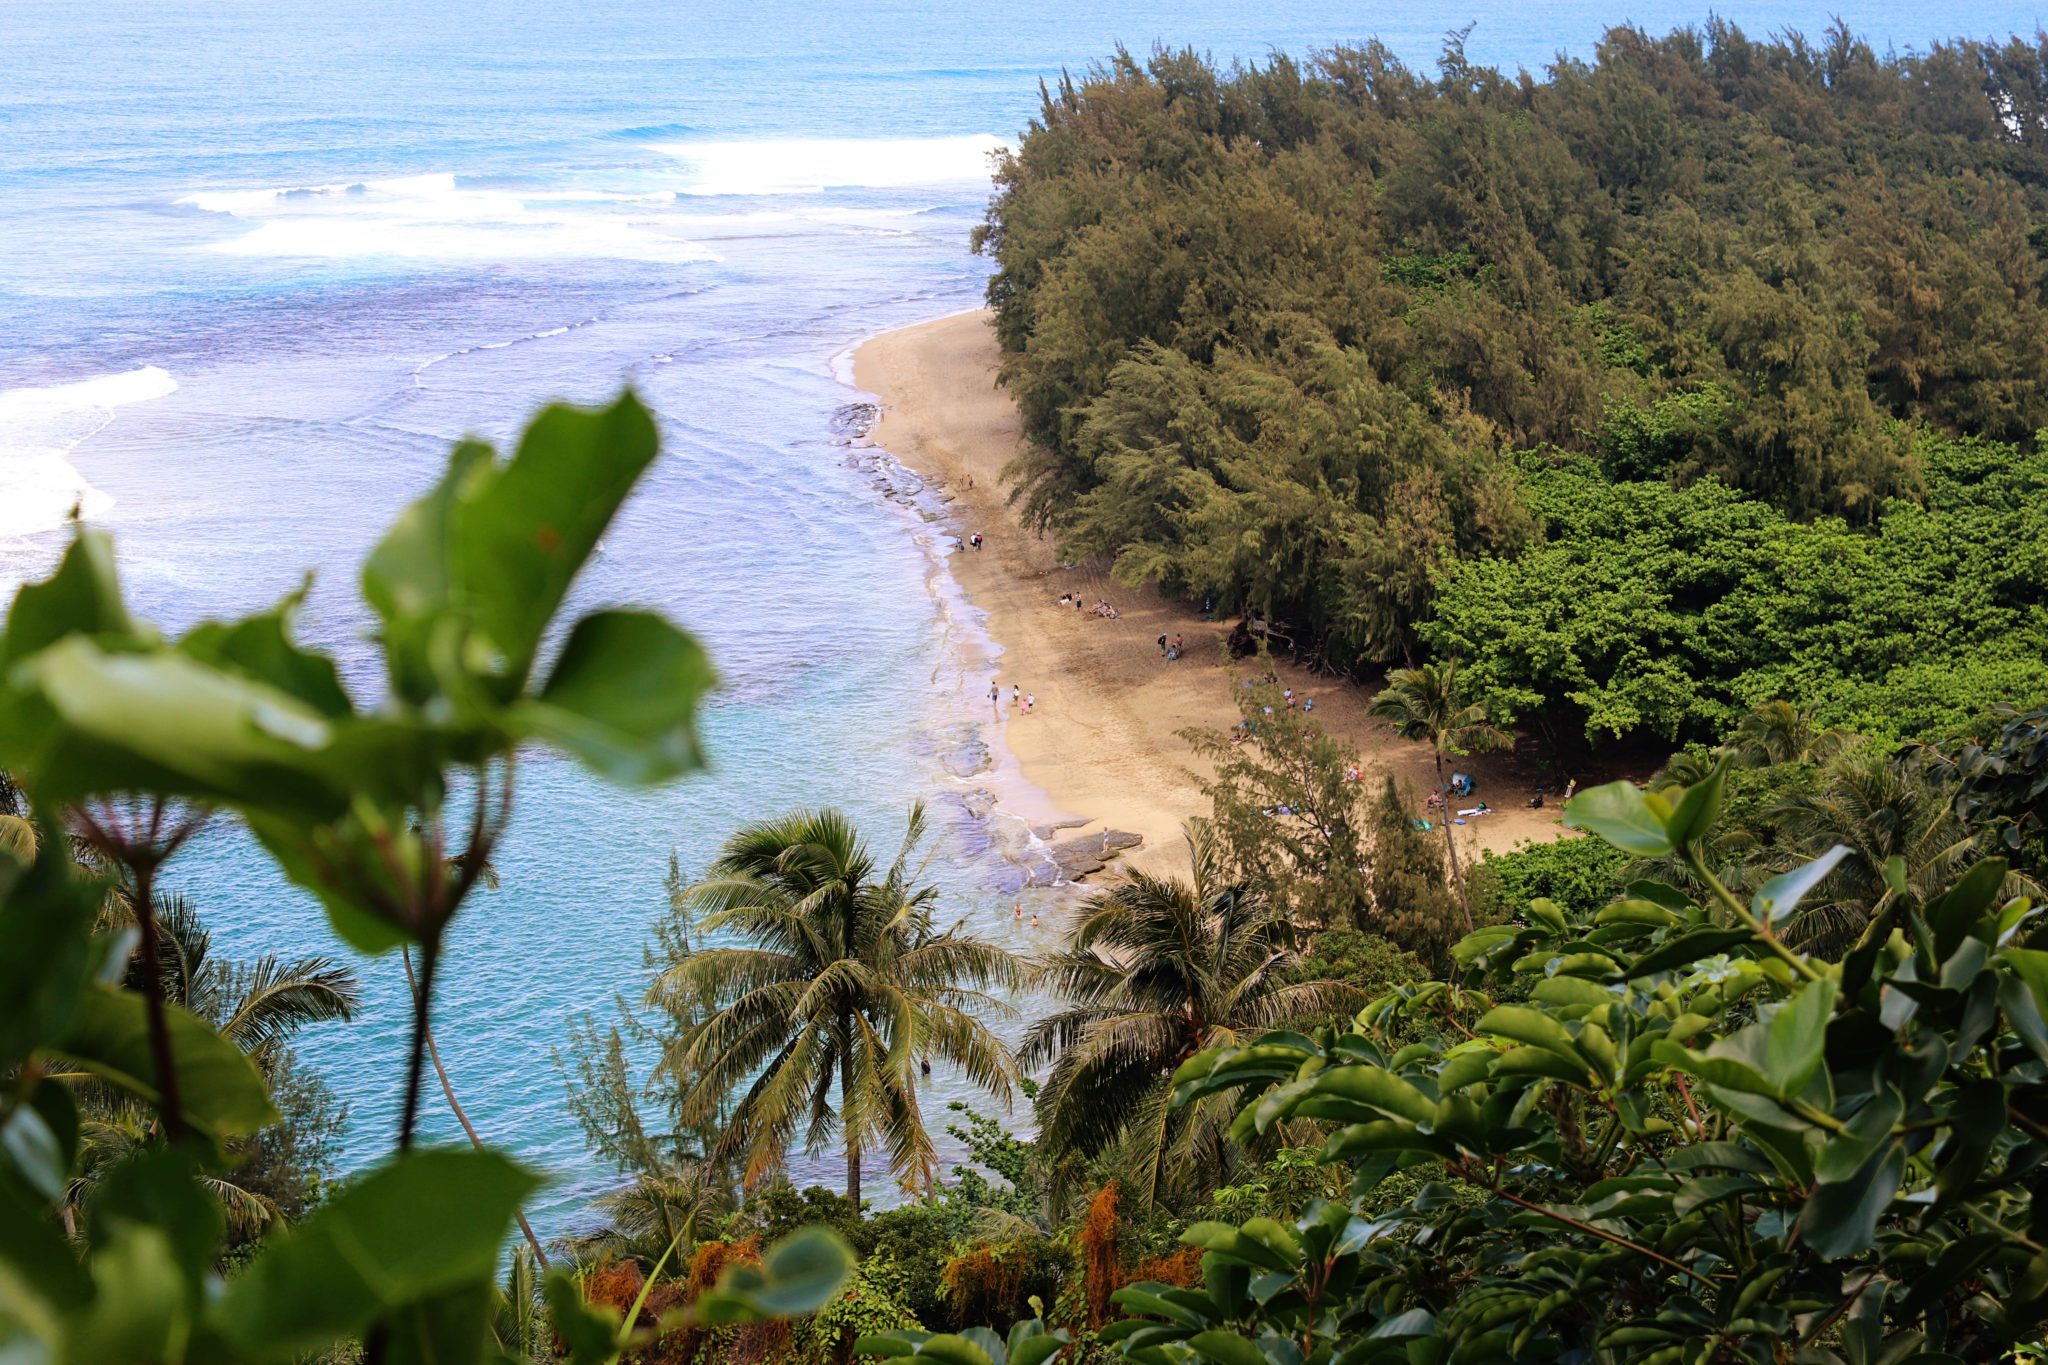 Ke'e beach is one of the best beaches in Kauai- Top things to do in Kauai #kauai #hawaii #simplywander #keebeach